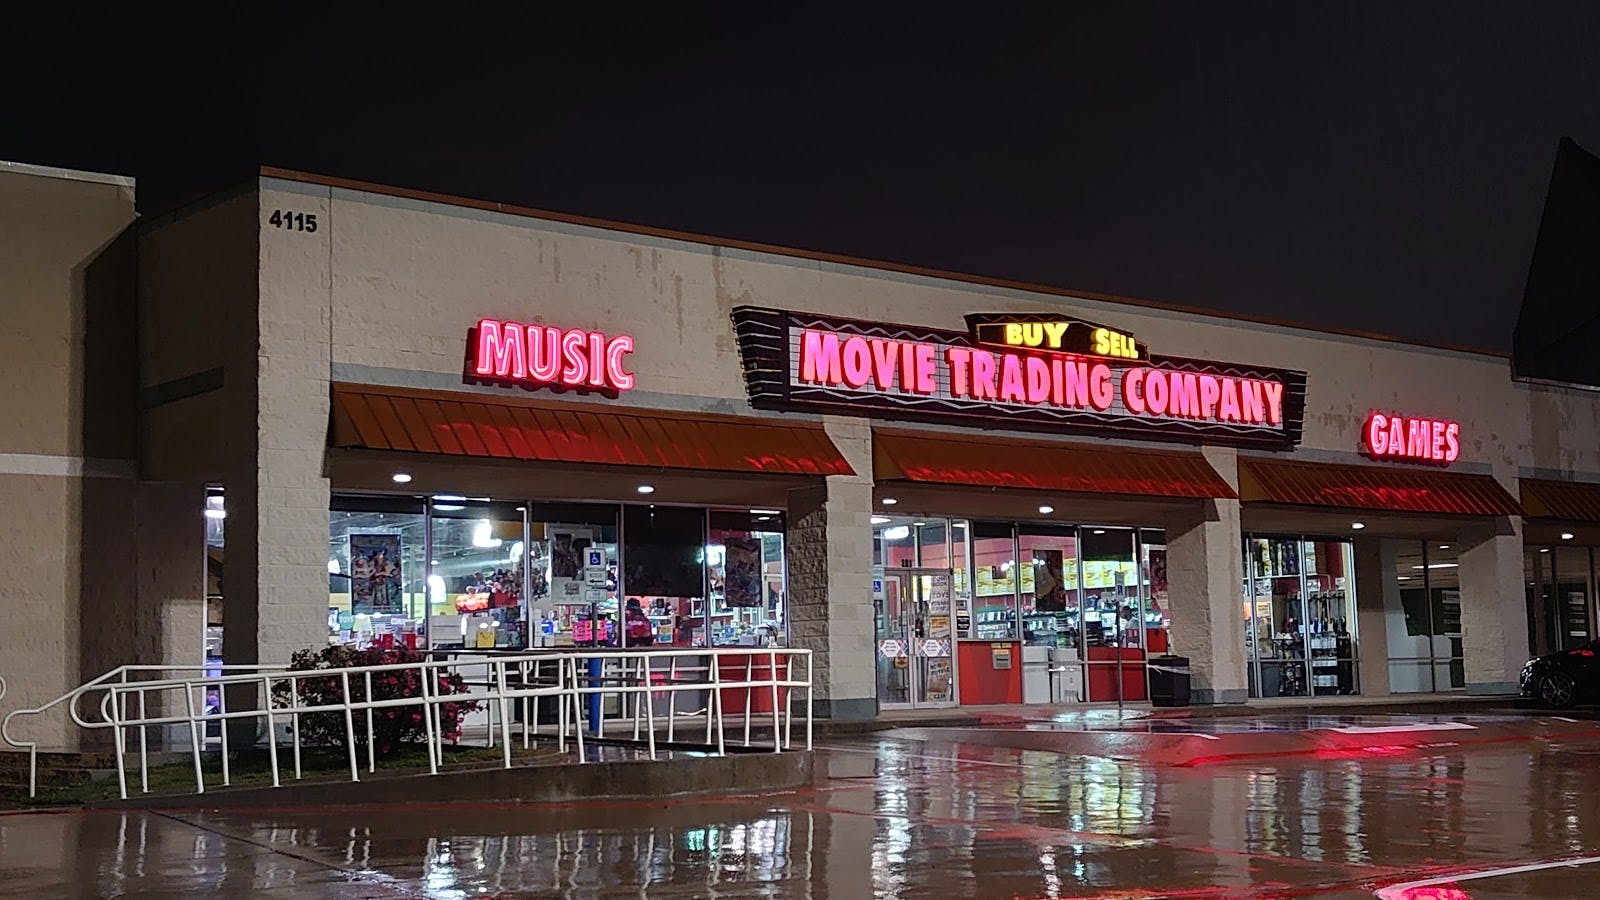 Image - Movie Trading Company